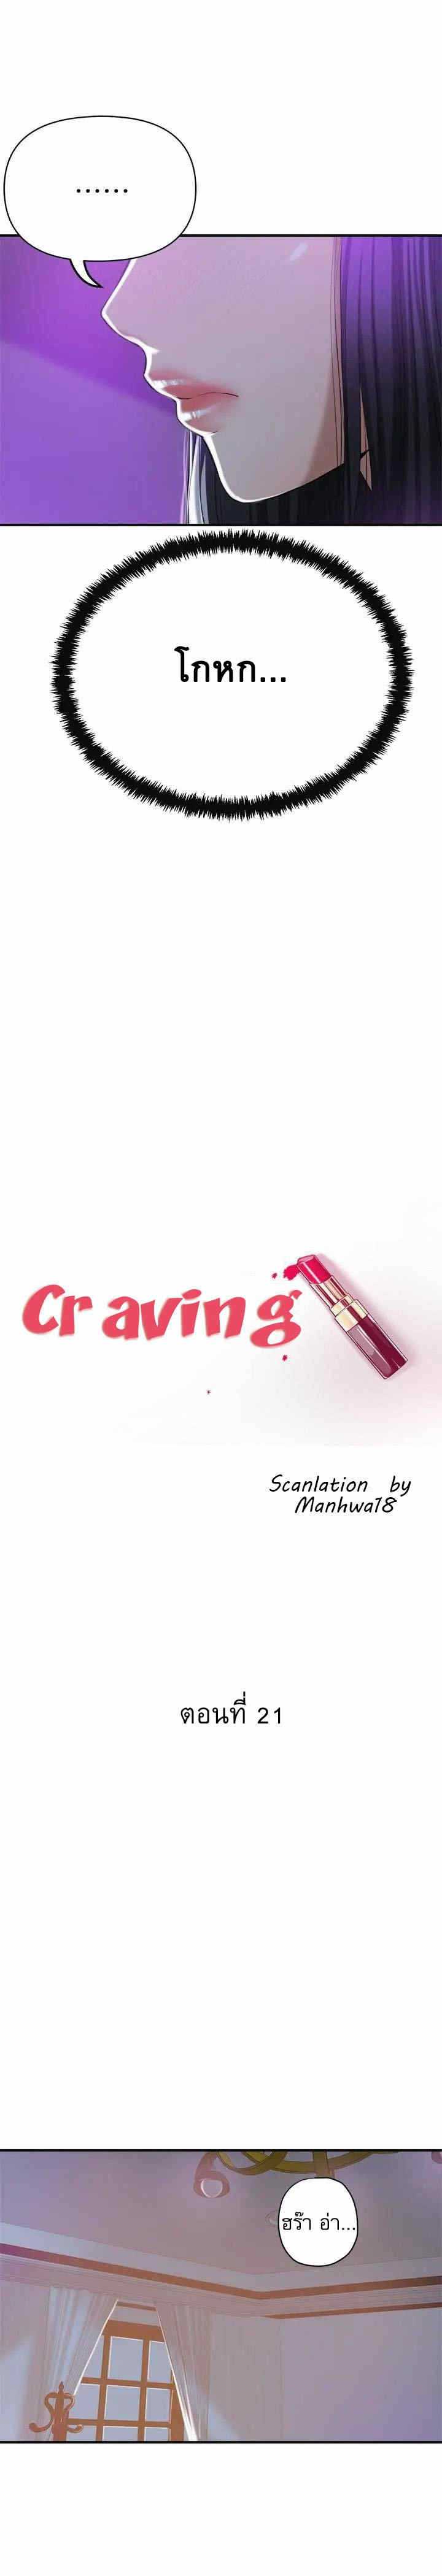 Craving 21 15